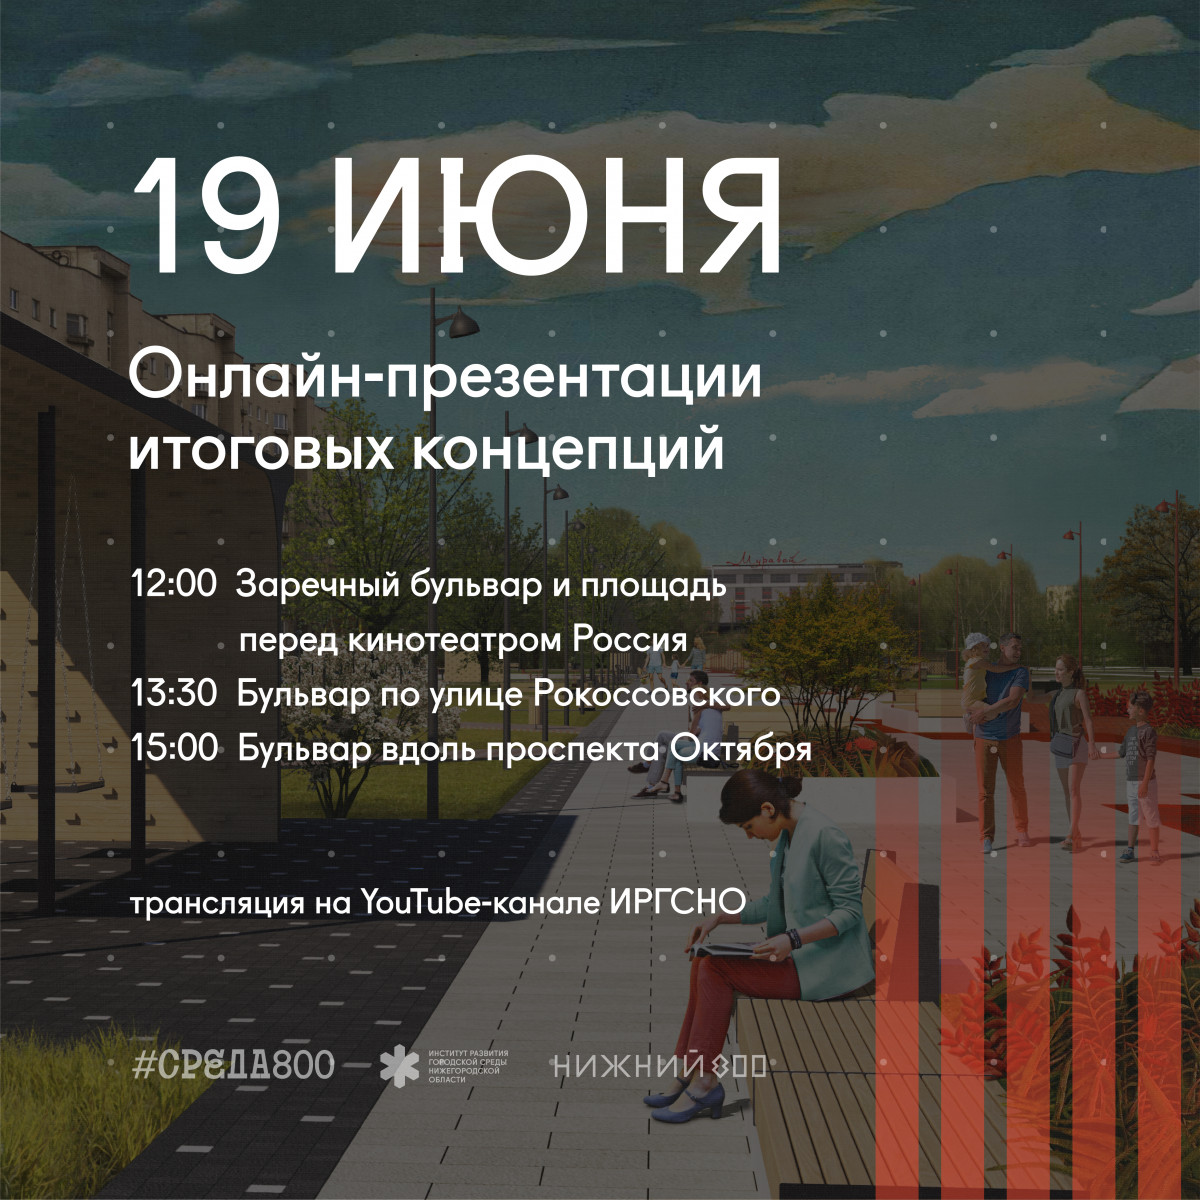 Концепции благоустройства трех бульваров и площади Маркина презентуют в Нижнем Новгороде